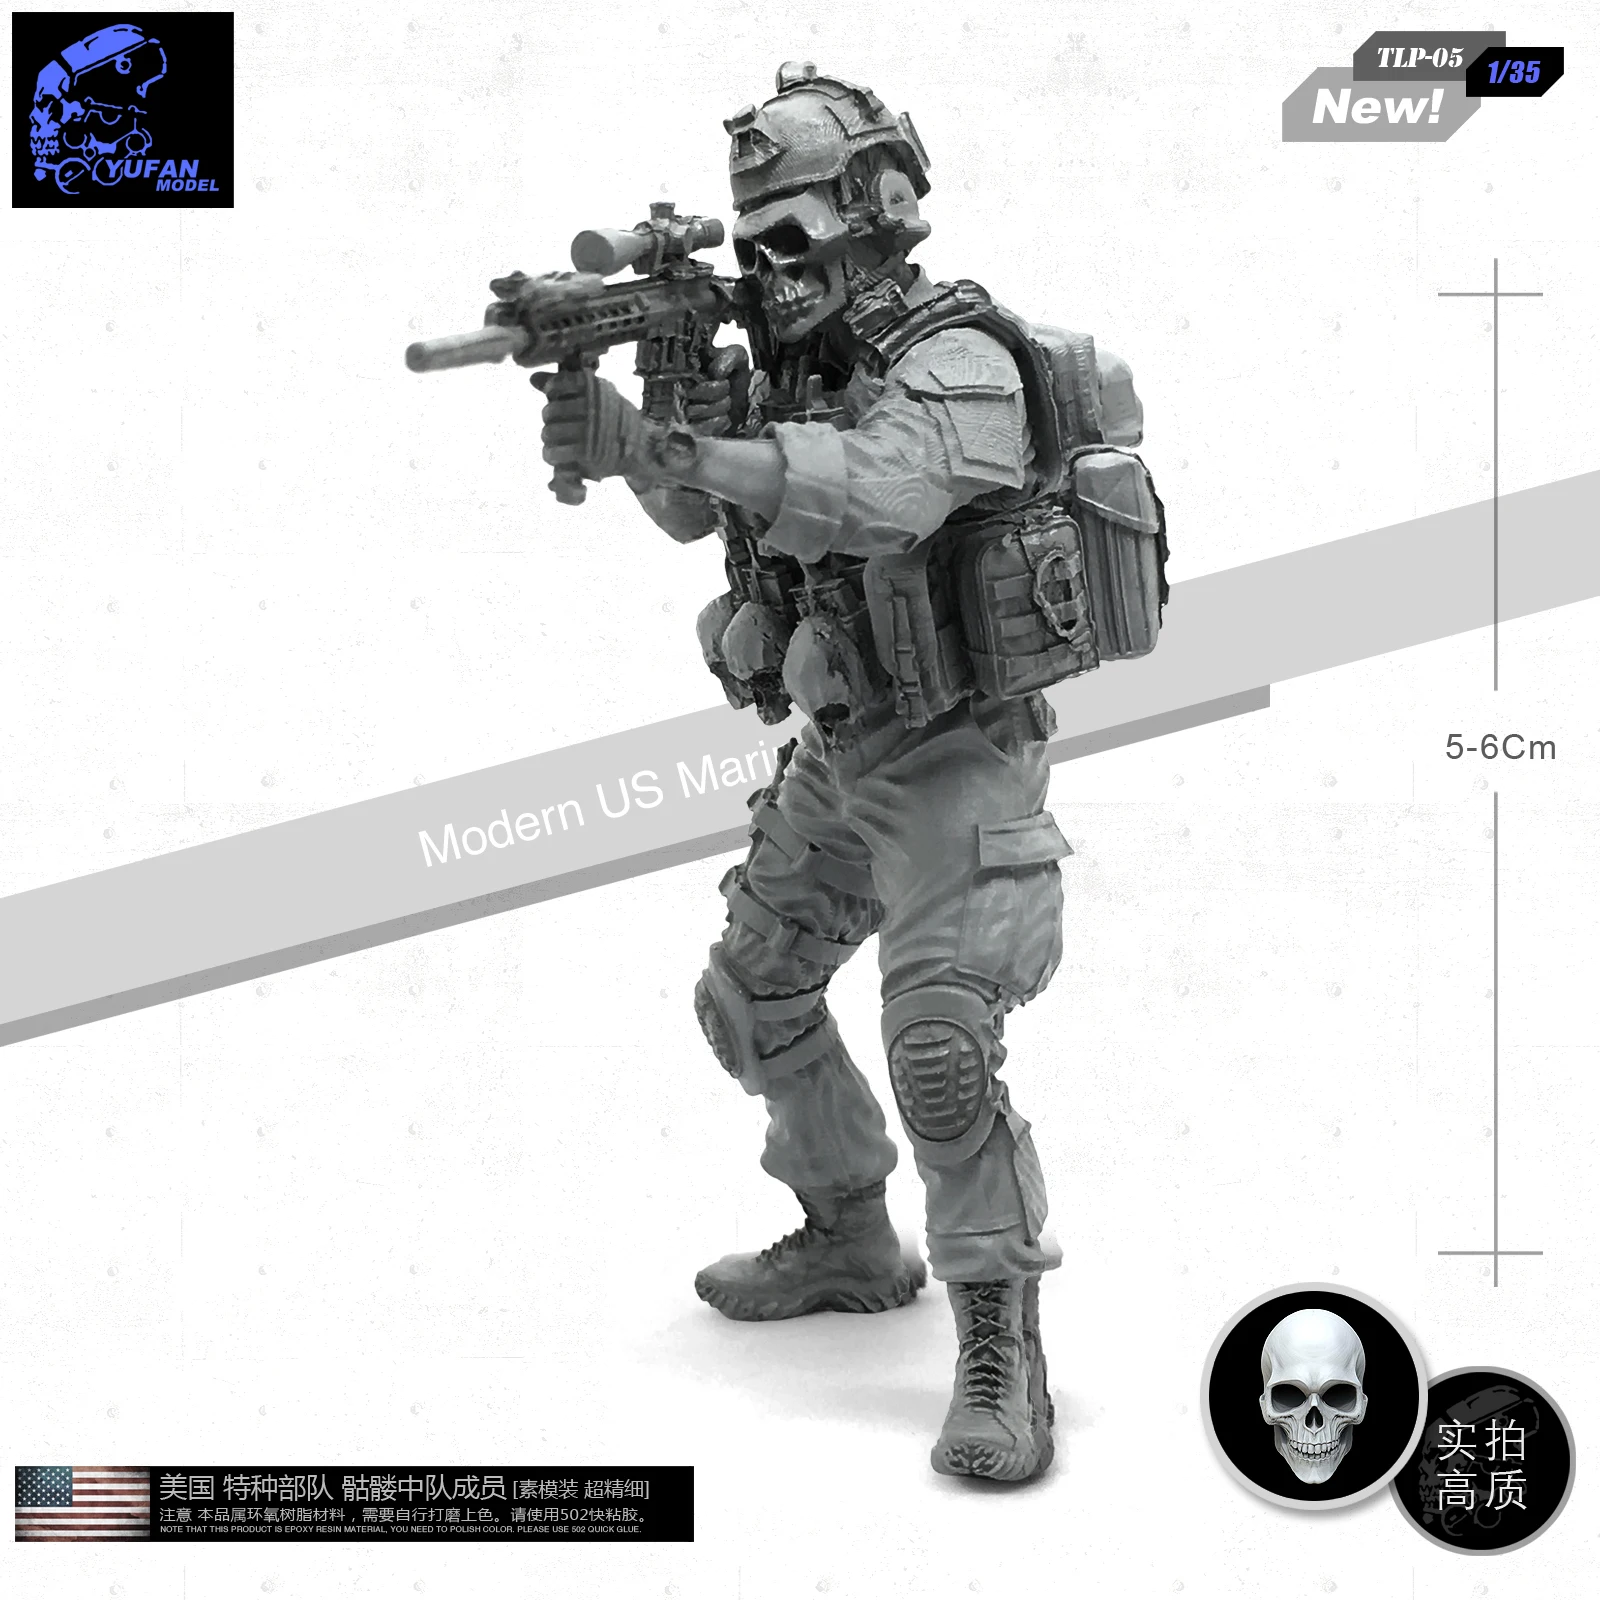 Yufan modèle 1/35 figurine soldat en résine membre de l'escadron crâne des Forces spéciales américaines modèle militaire non monté Tlp-05